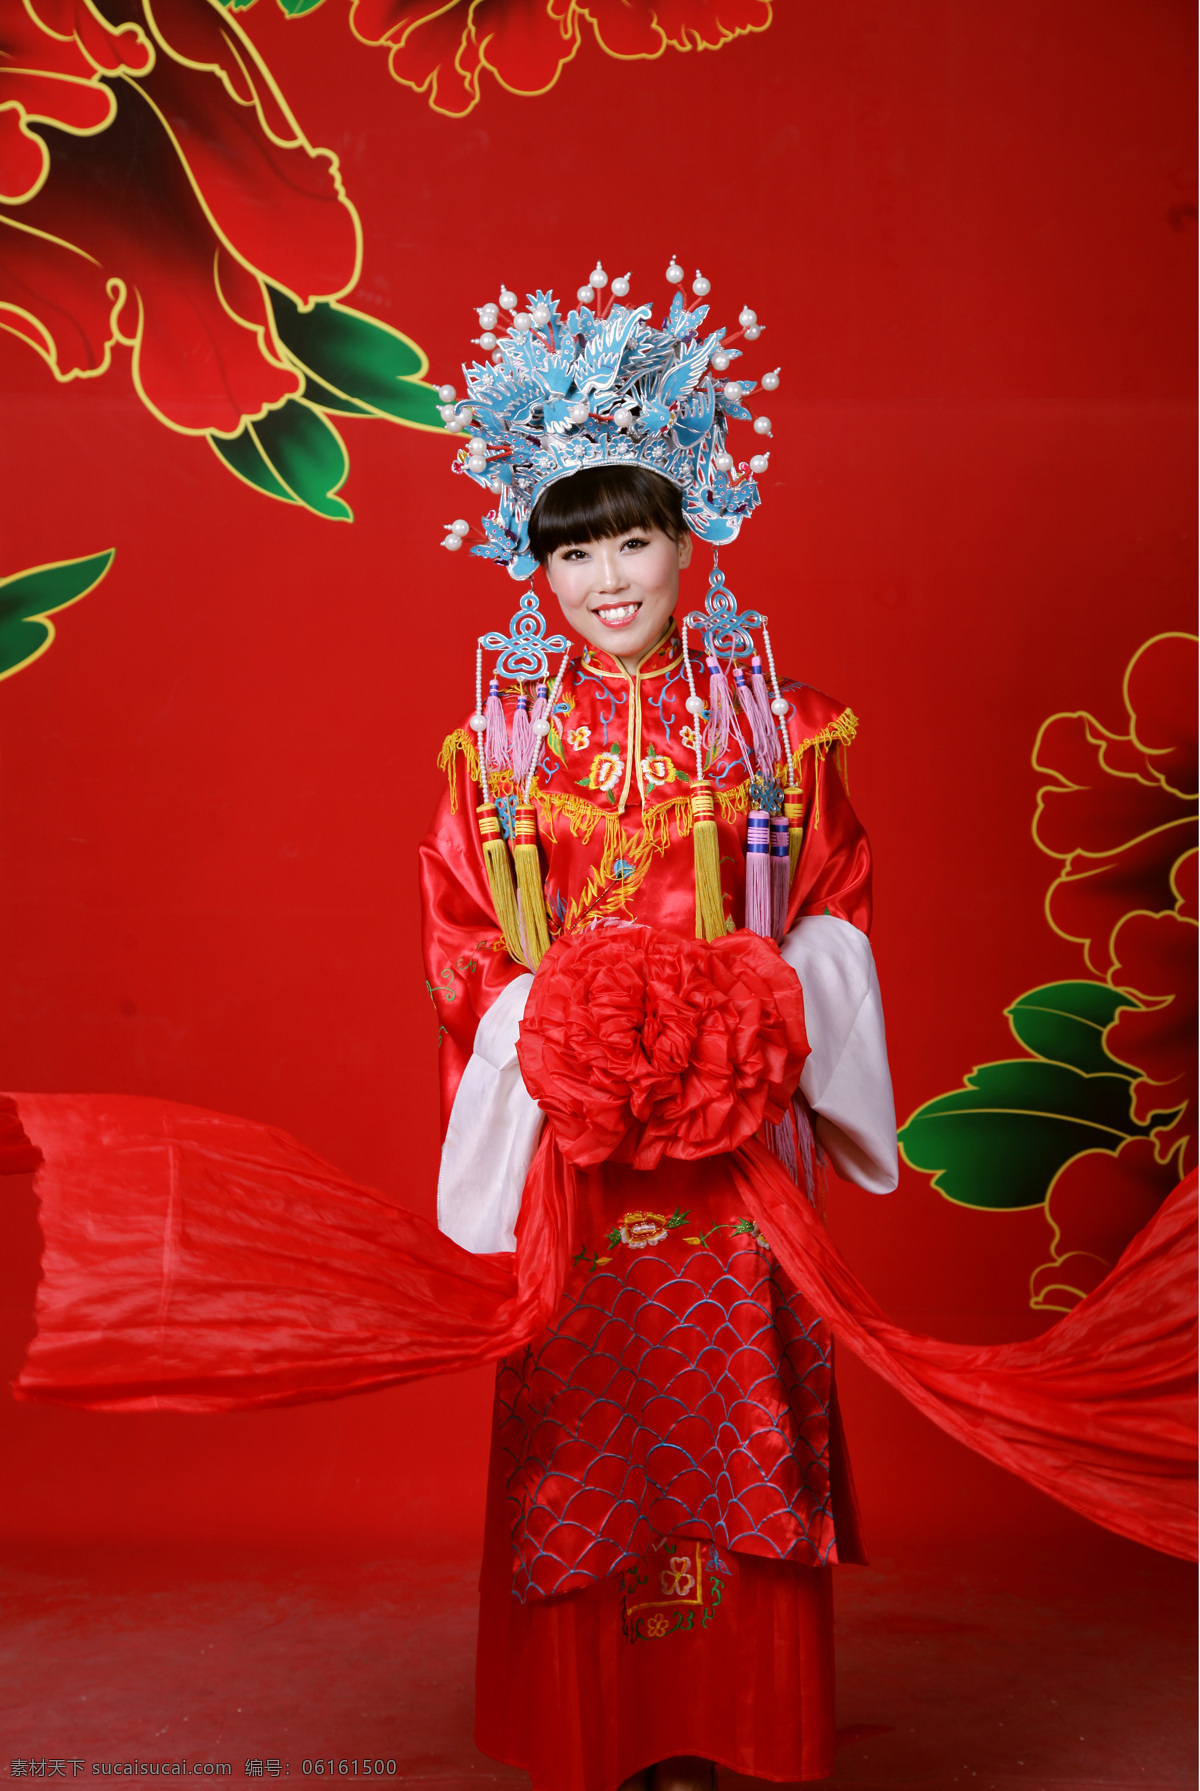 凤冠霞帔 古装写真 绣球 红色 笑容 中国风 女性女人 人物图库